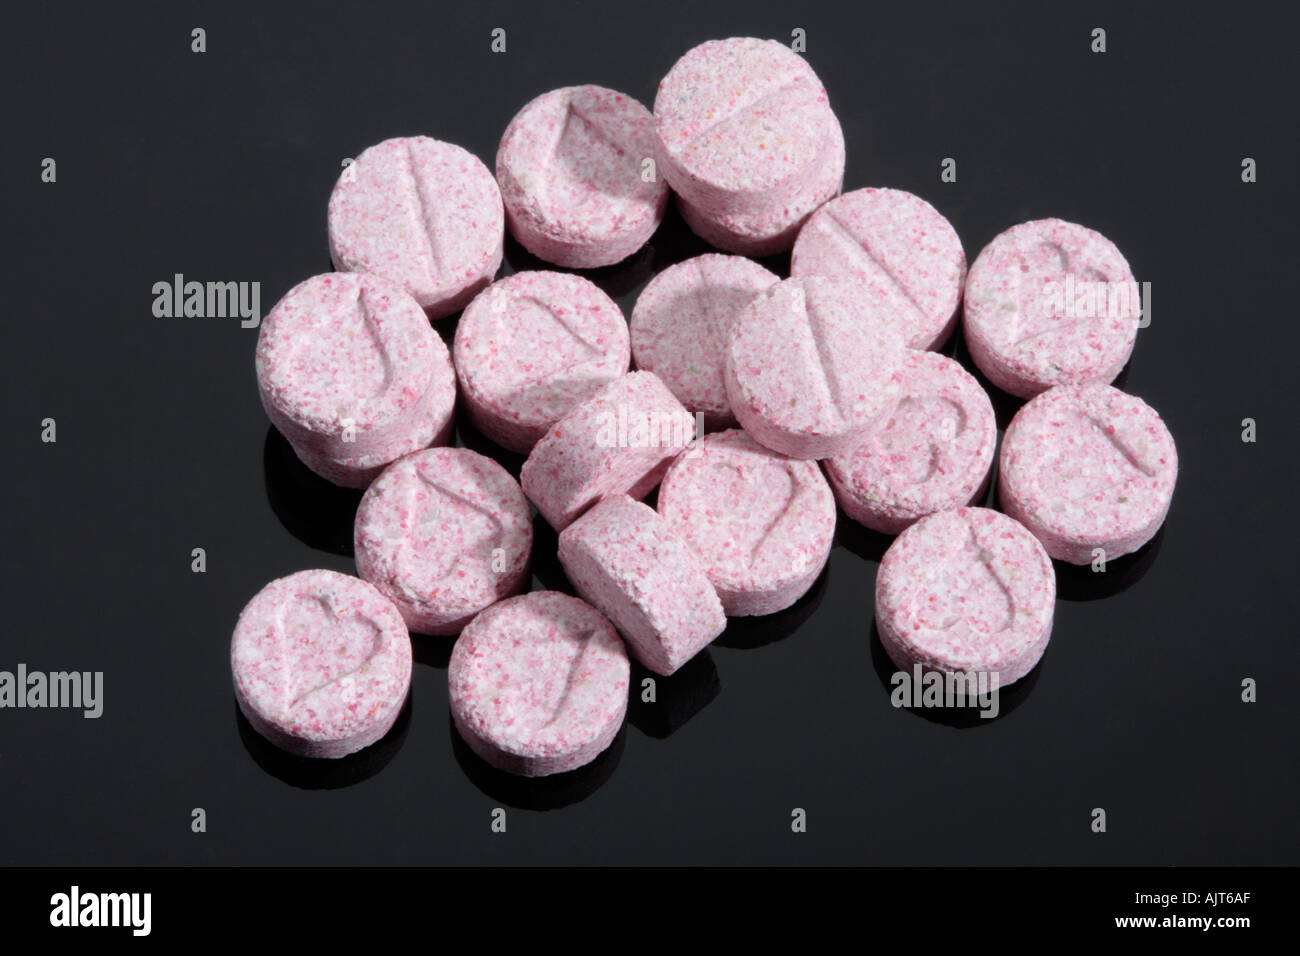 Pillola di ecstasy immagini e fotografie stock ad alta risoluzione - Alamy